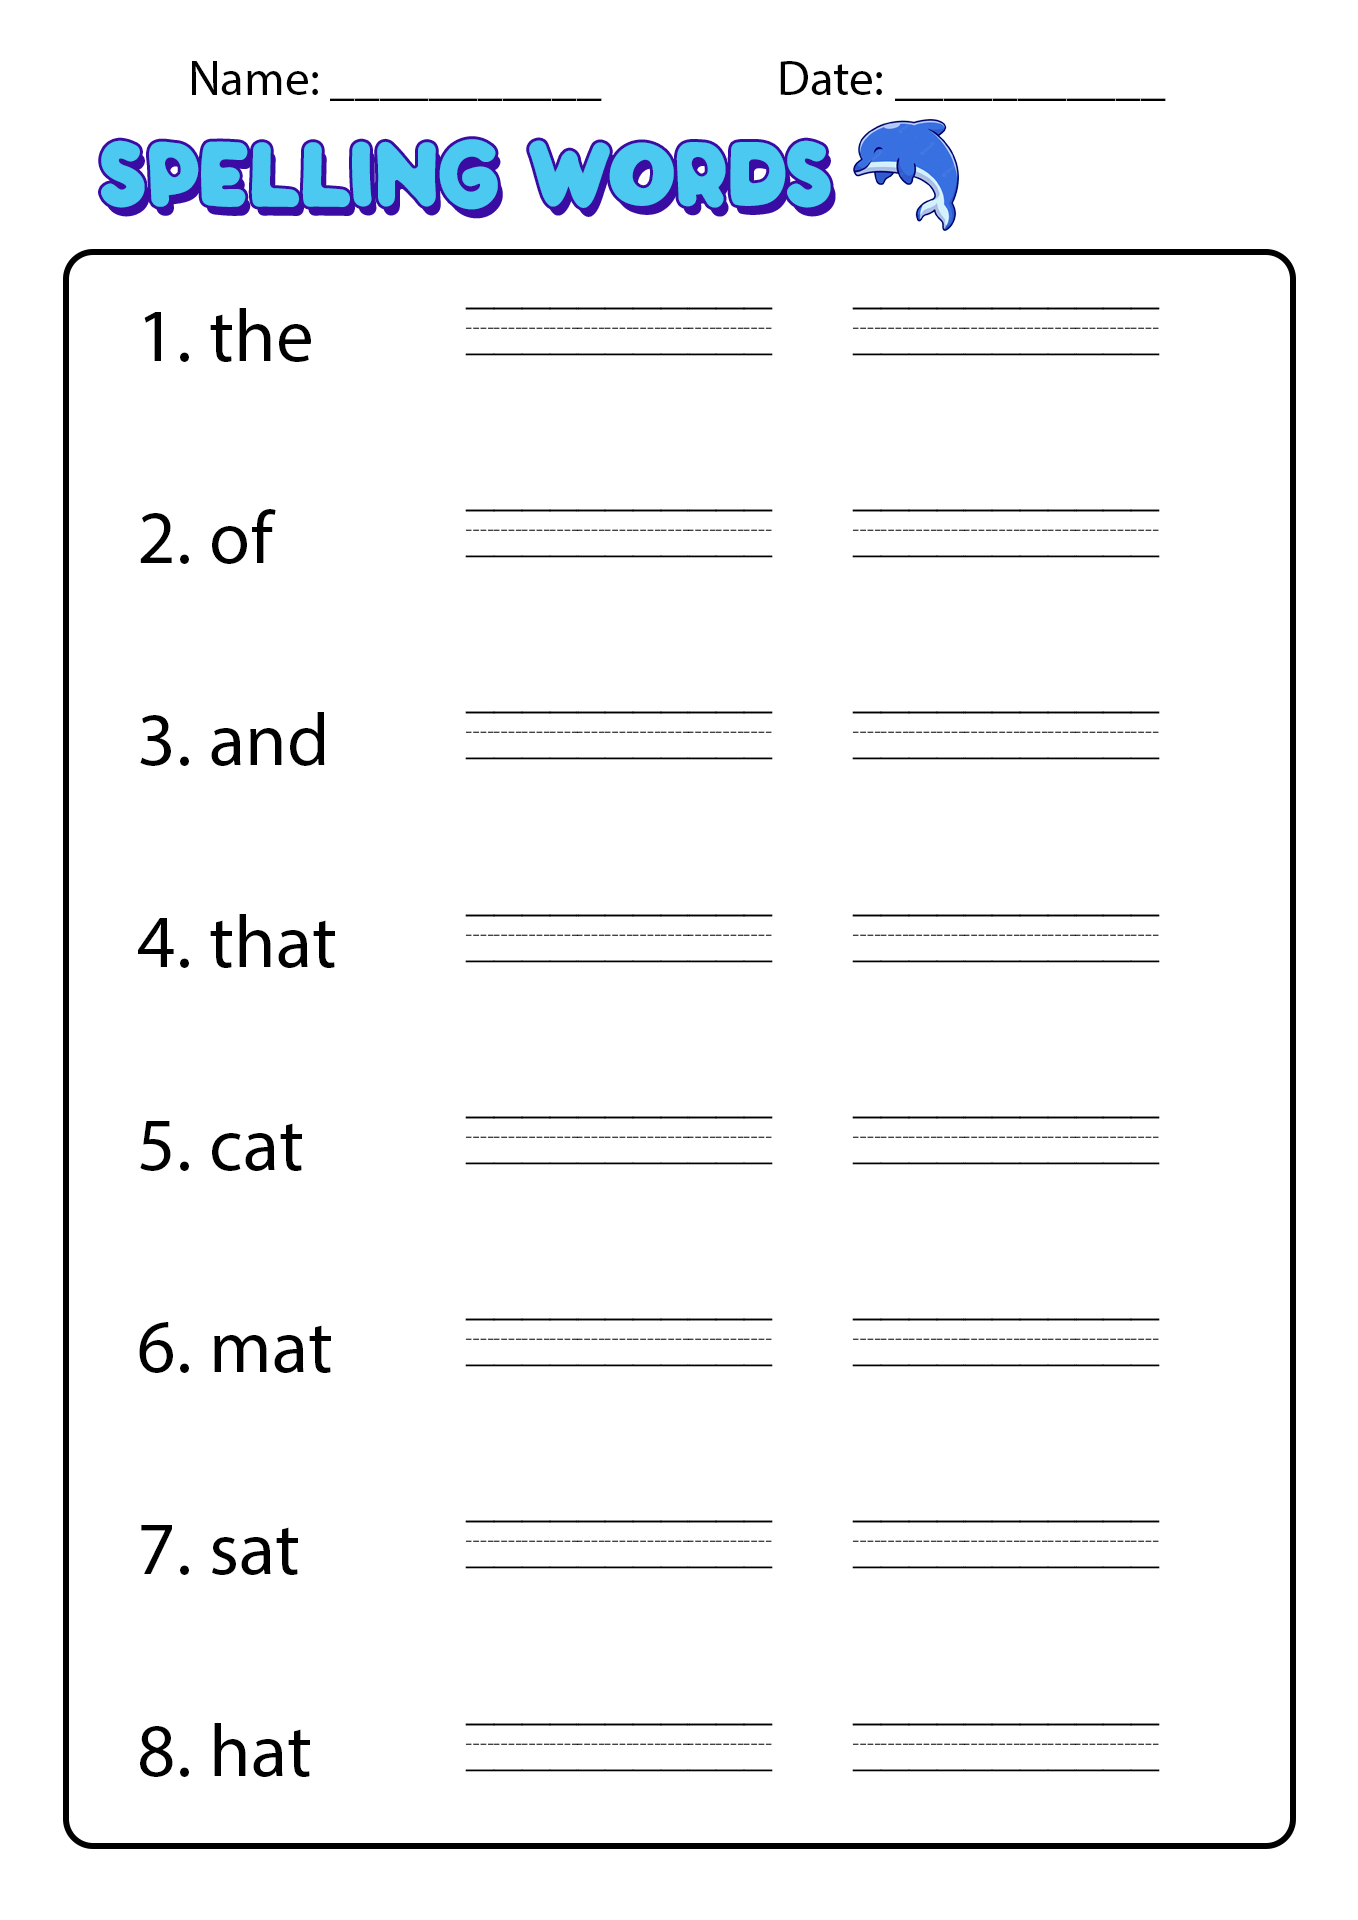 Printable Spelling Practice Worksheets